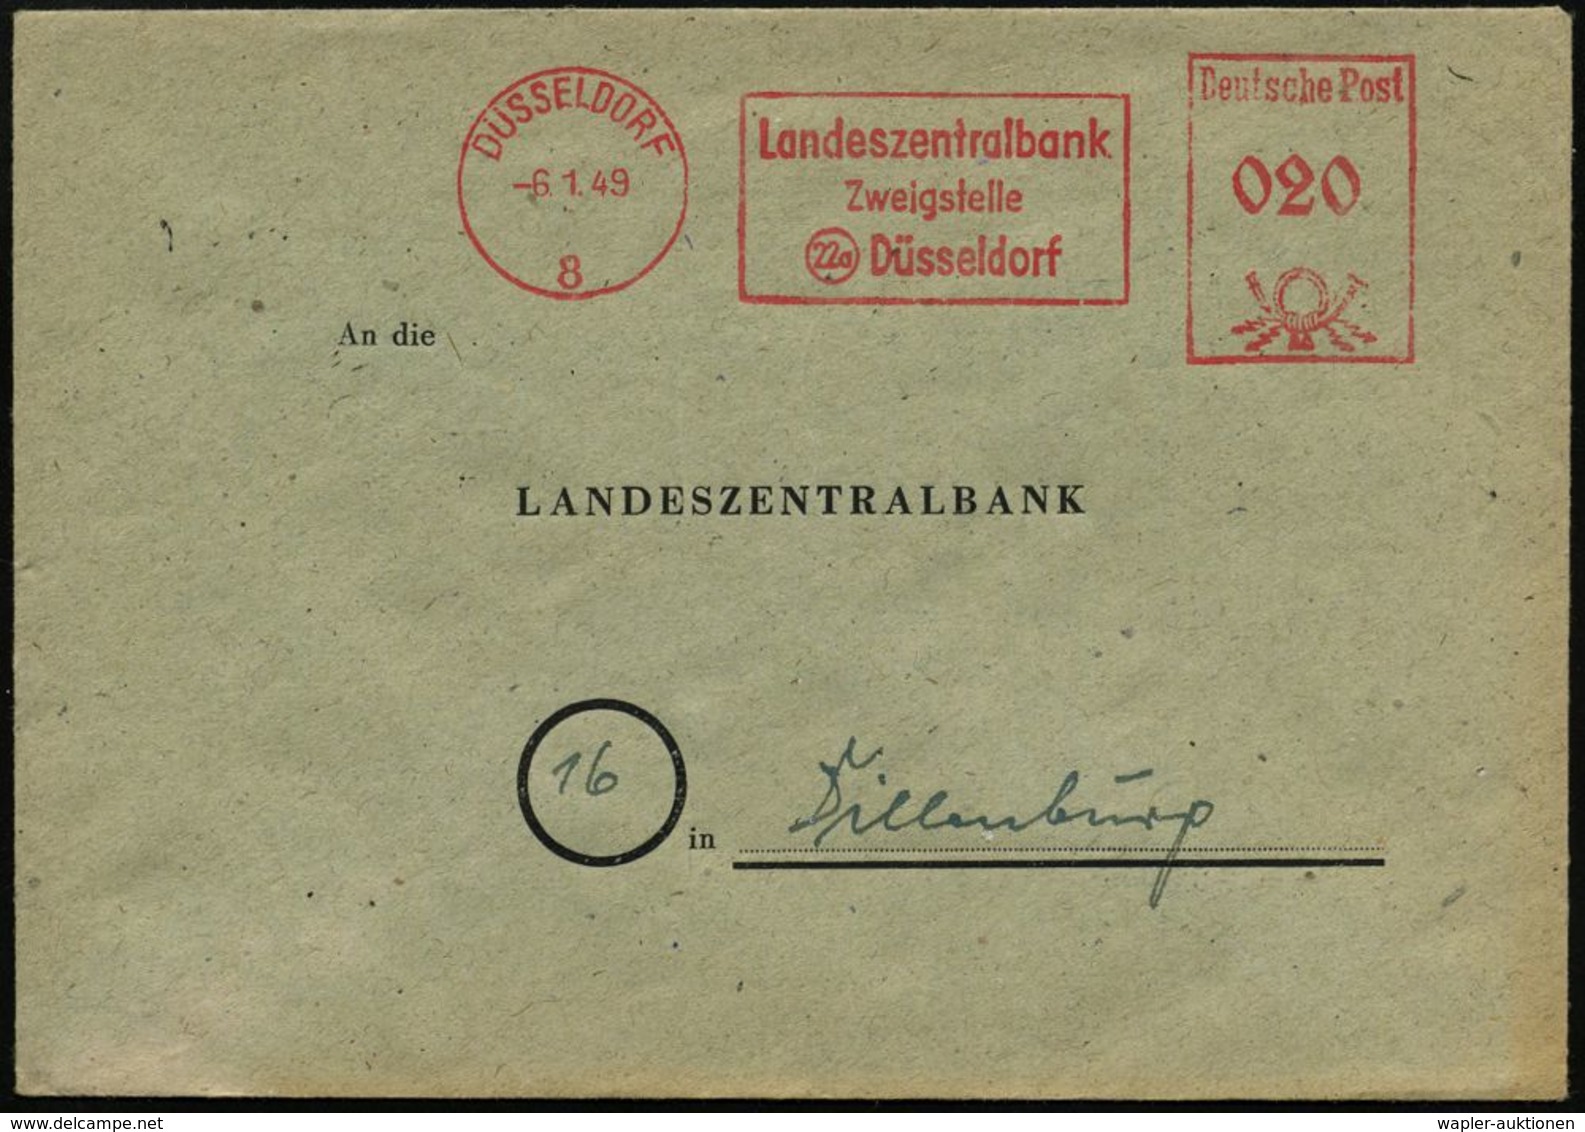 STAATSBANKEN / REICHSBANK / BUNDESBANK : DÜSSELDORF/ 8/ Landeszentralbank/ Zweigstelle 1949 (6.1.) AFS (nach Währungsref - Non Classés